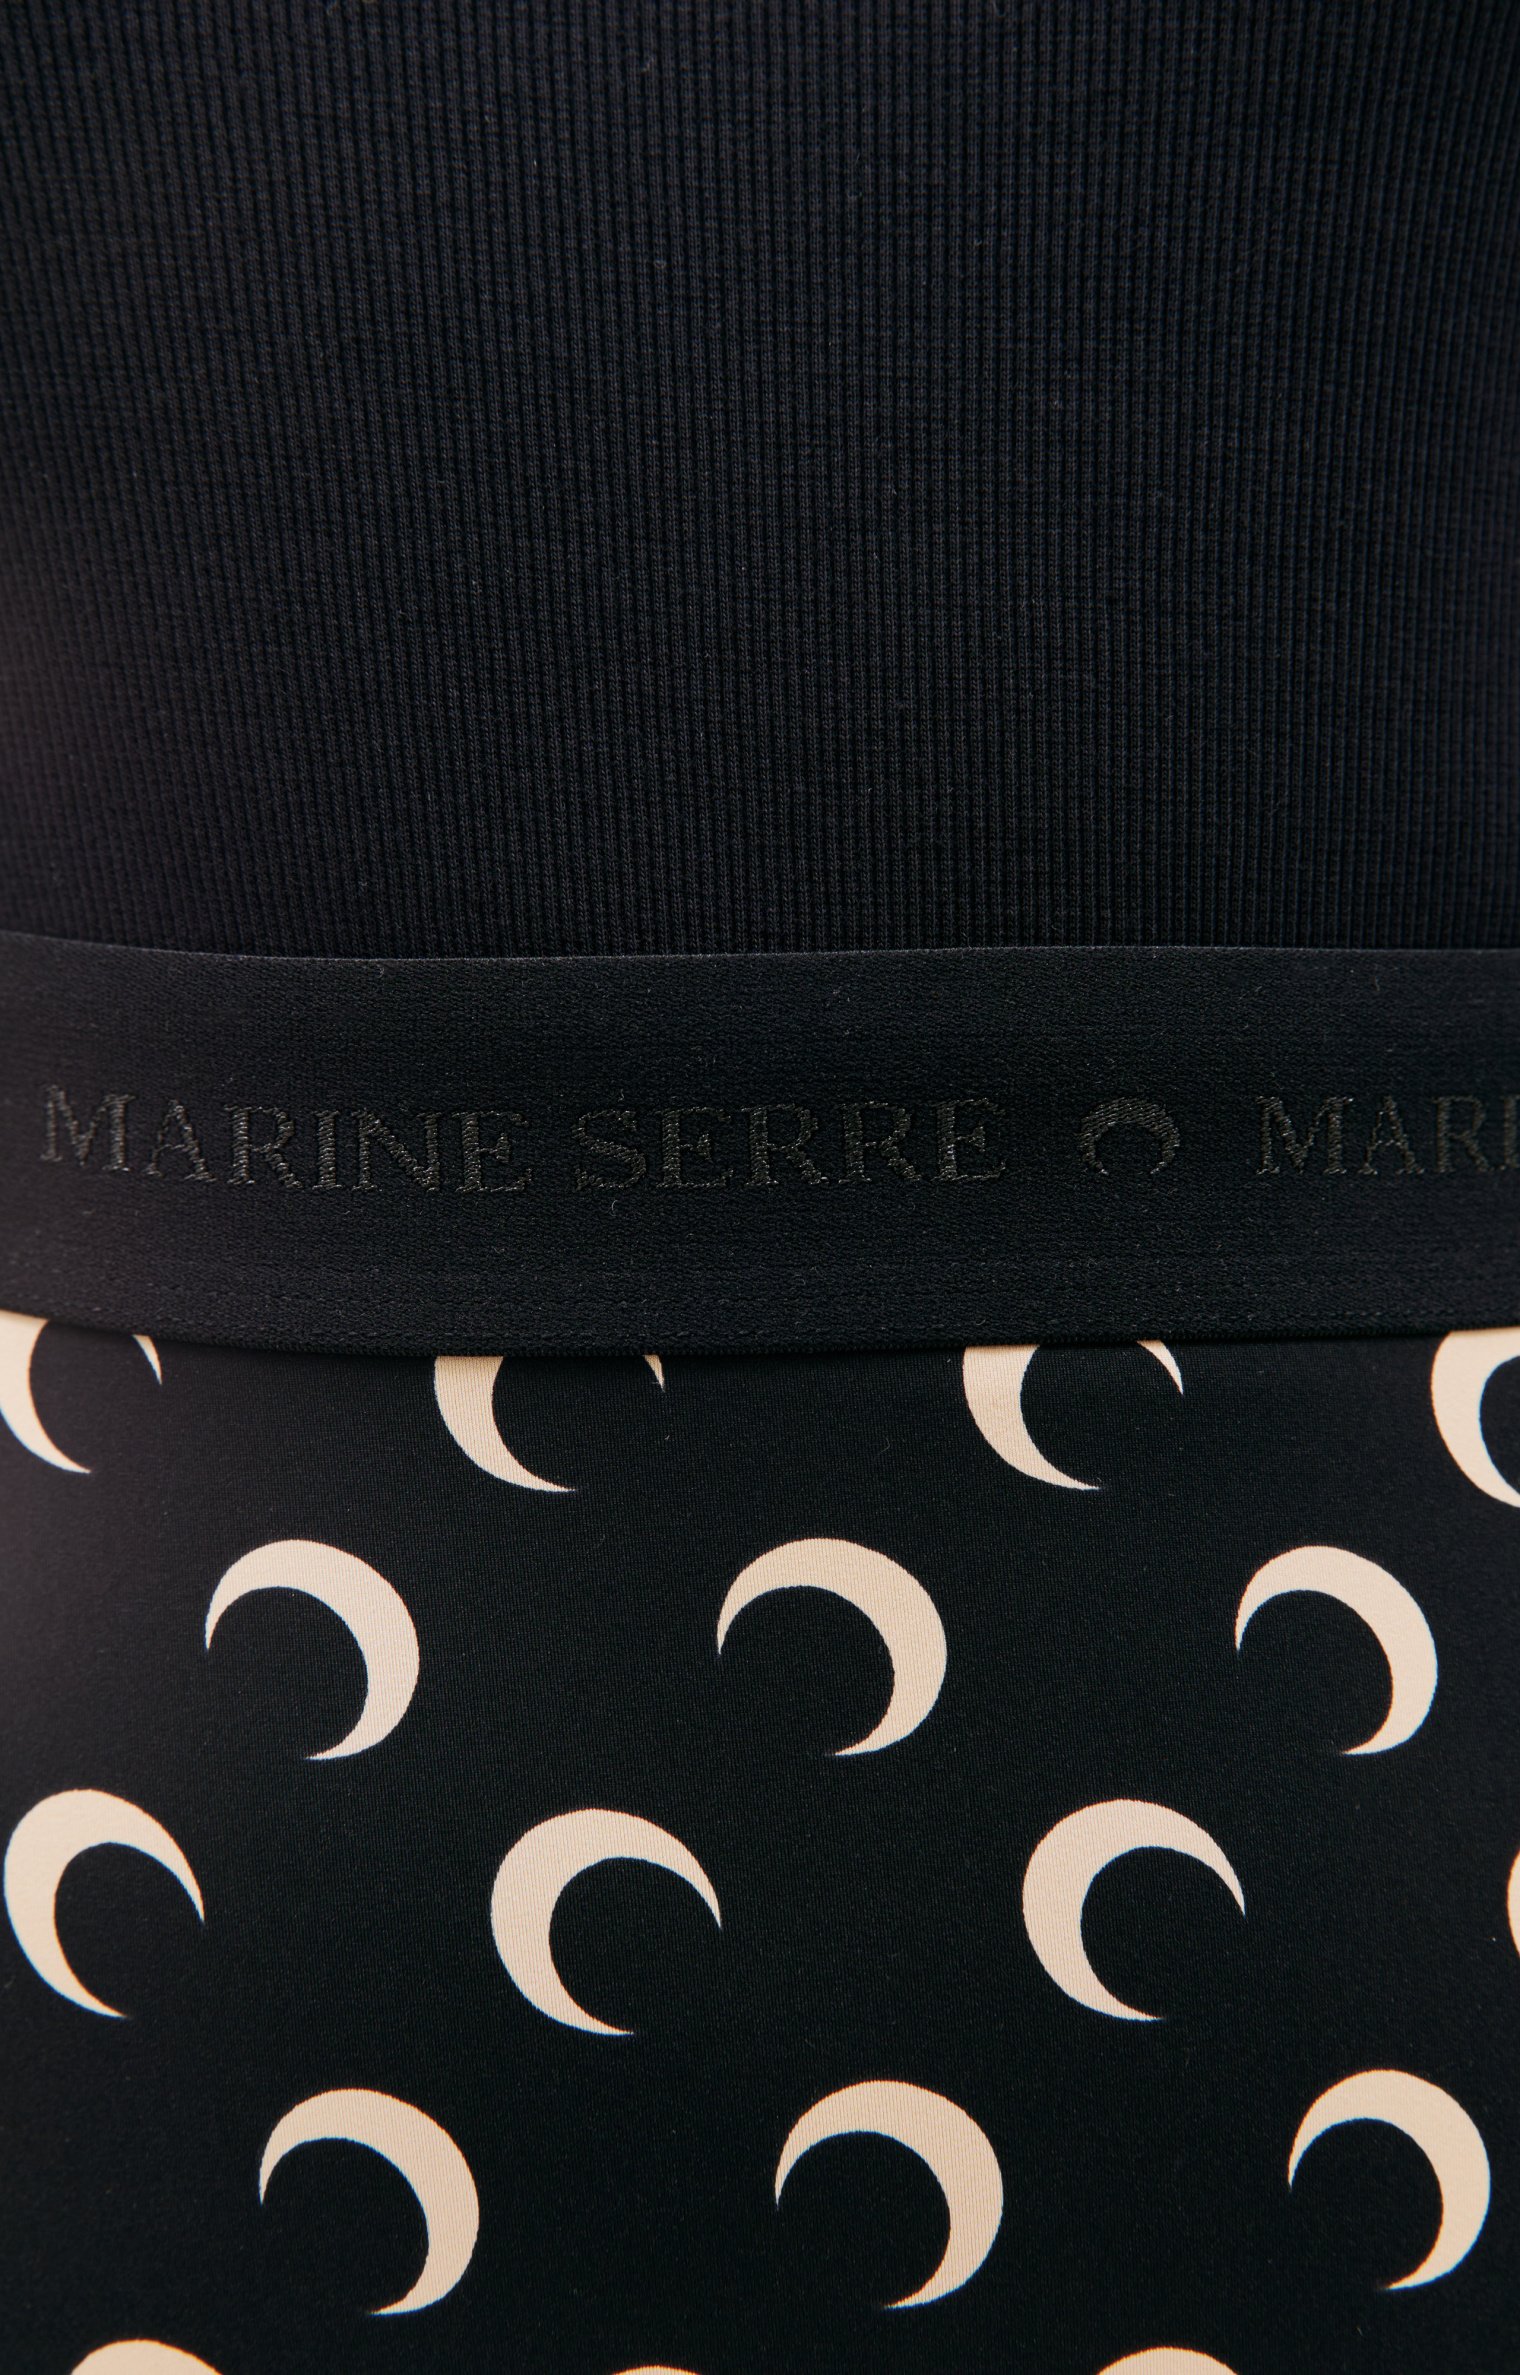 MARINE SERRE Moon all over logo leggings